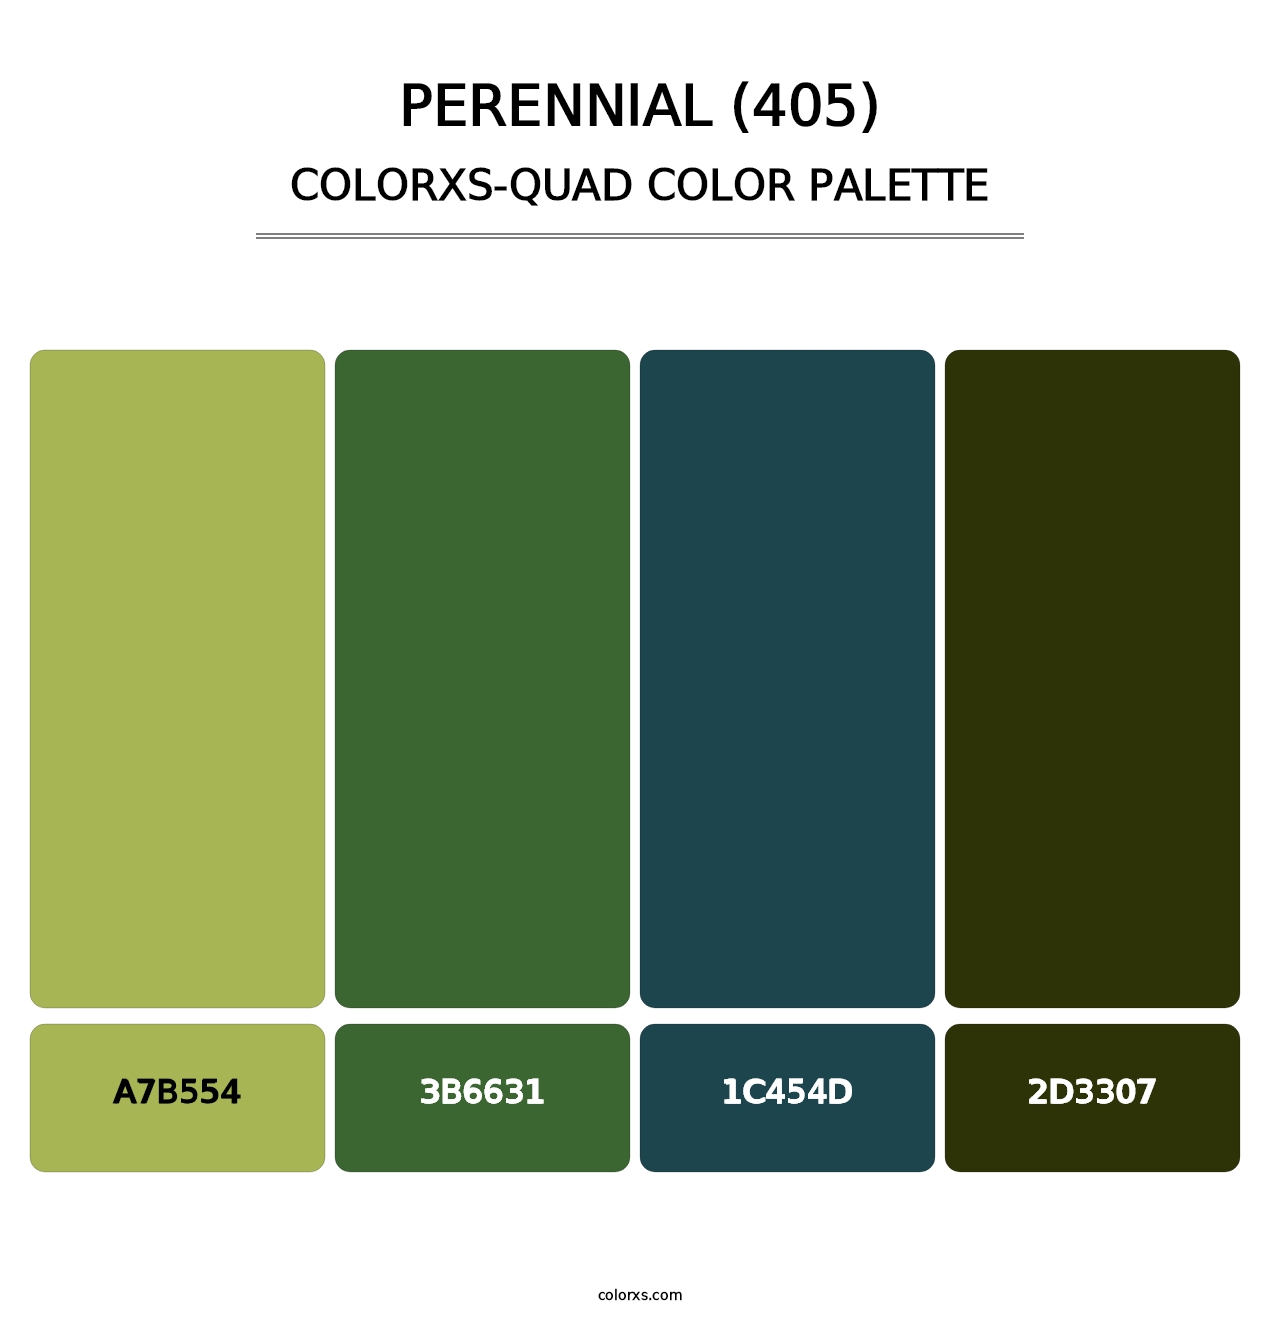 Perennial (405) - Colorxs Quad Palette